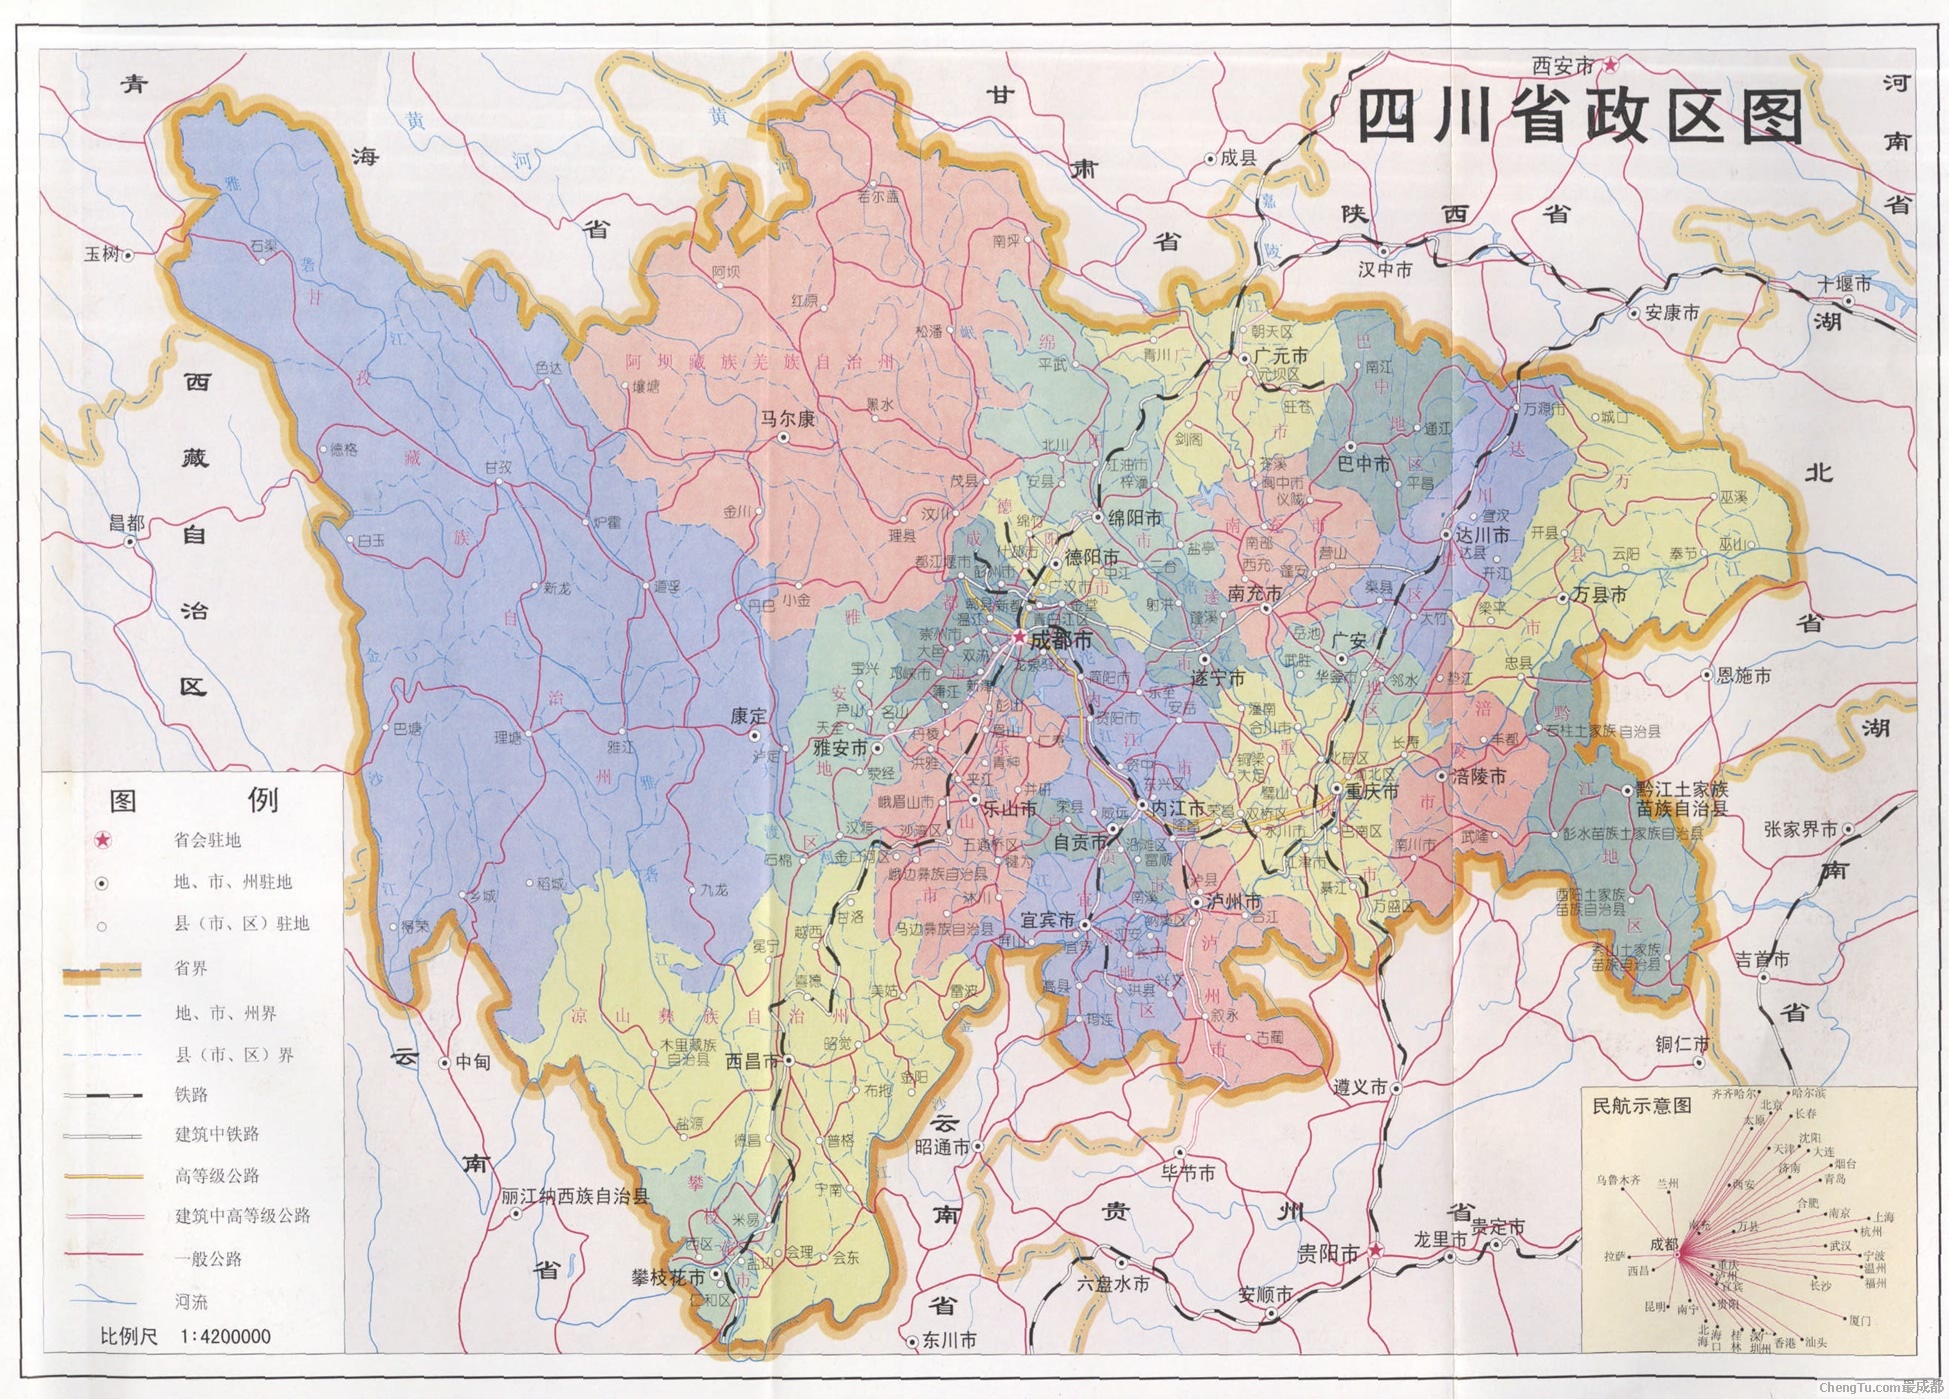 朝鲜人口及国土面积_重庆市面积及人口